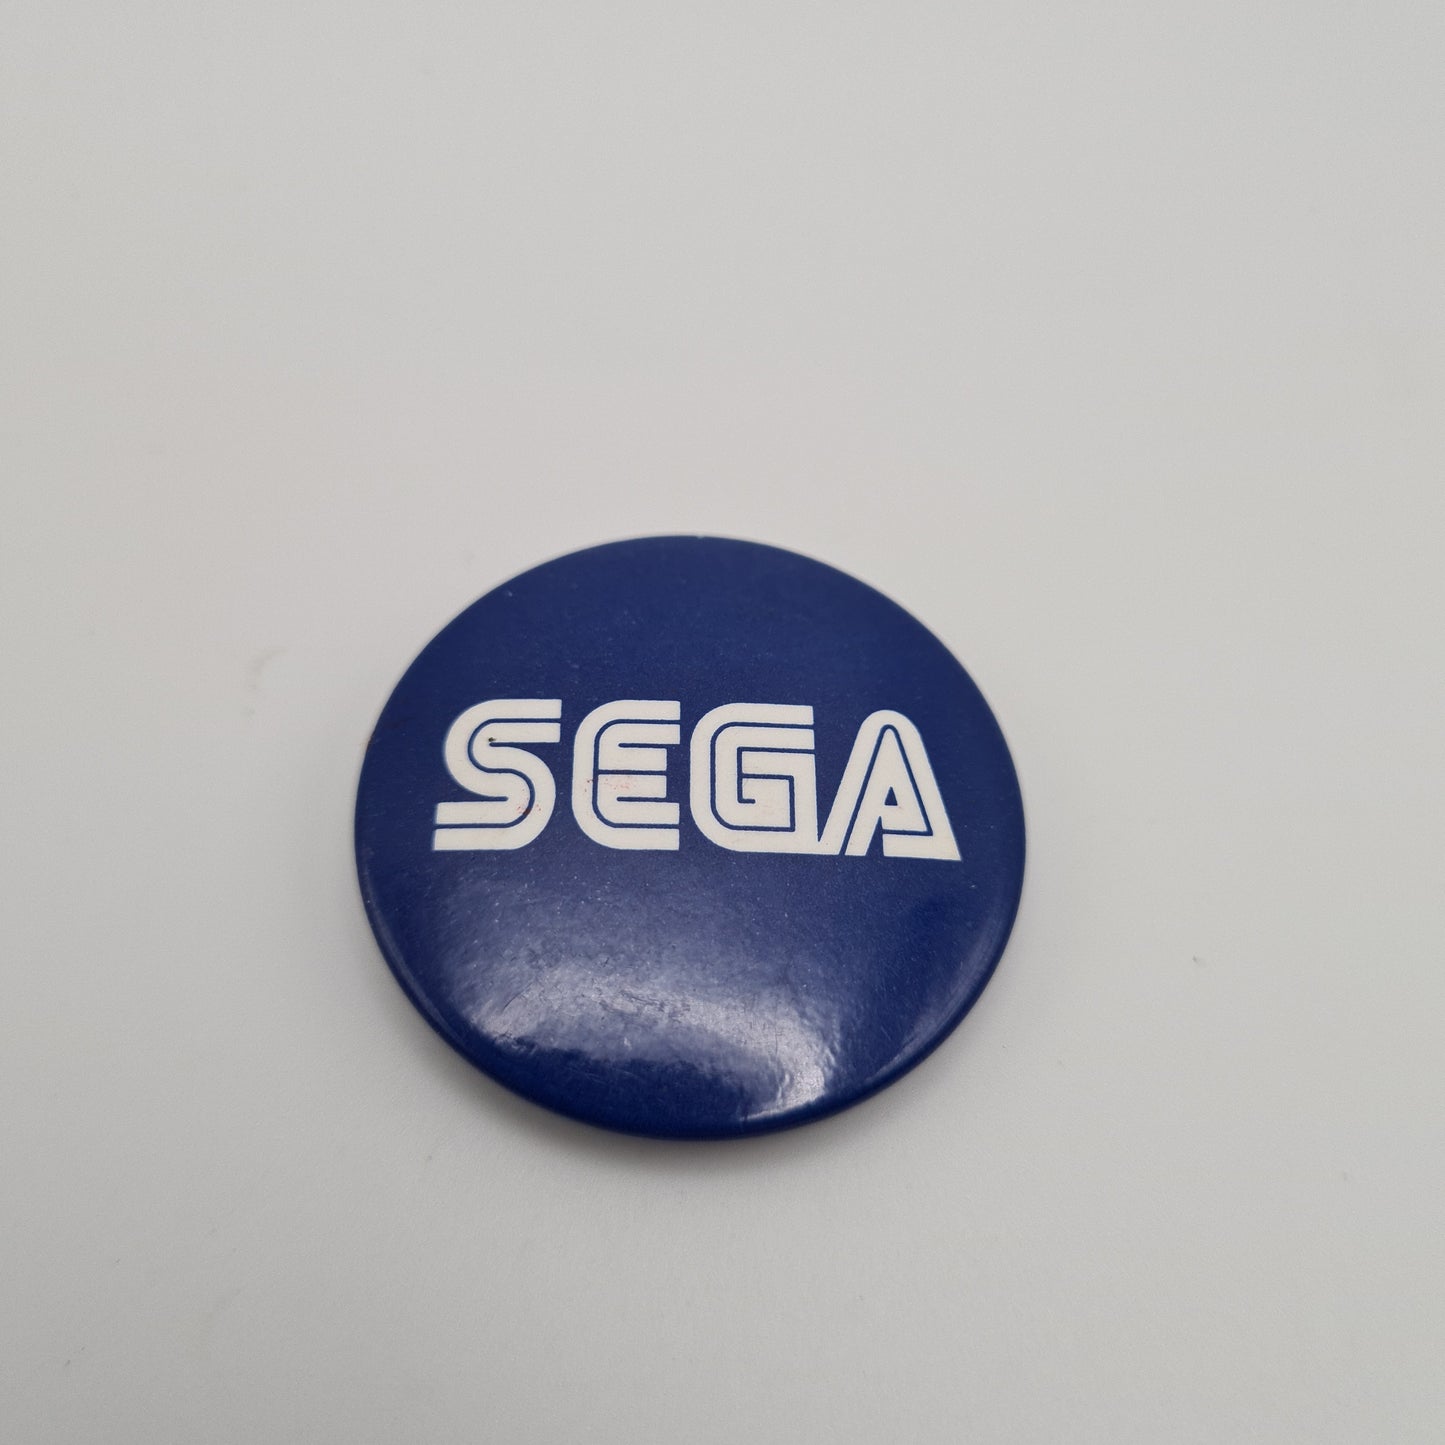 Sega Retro Badge